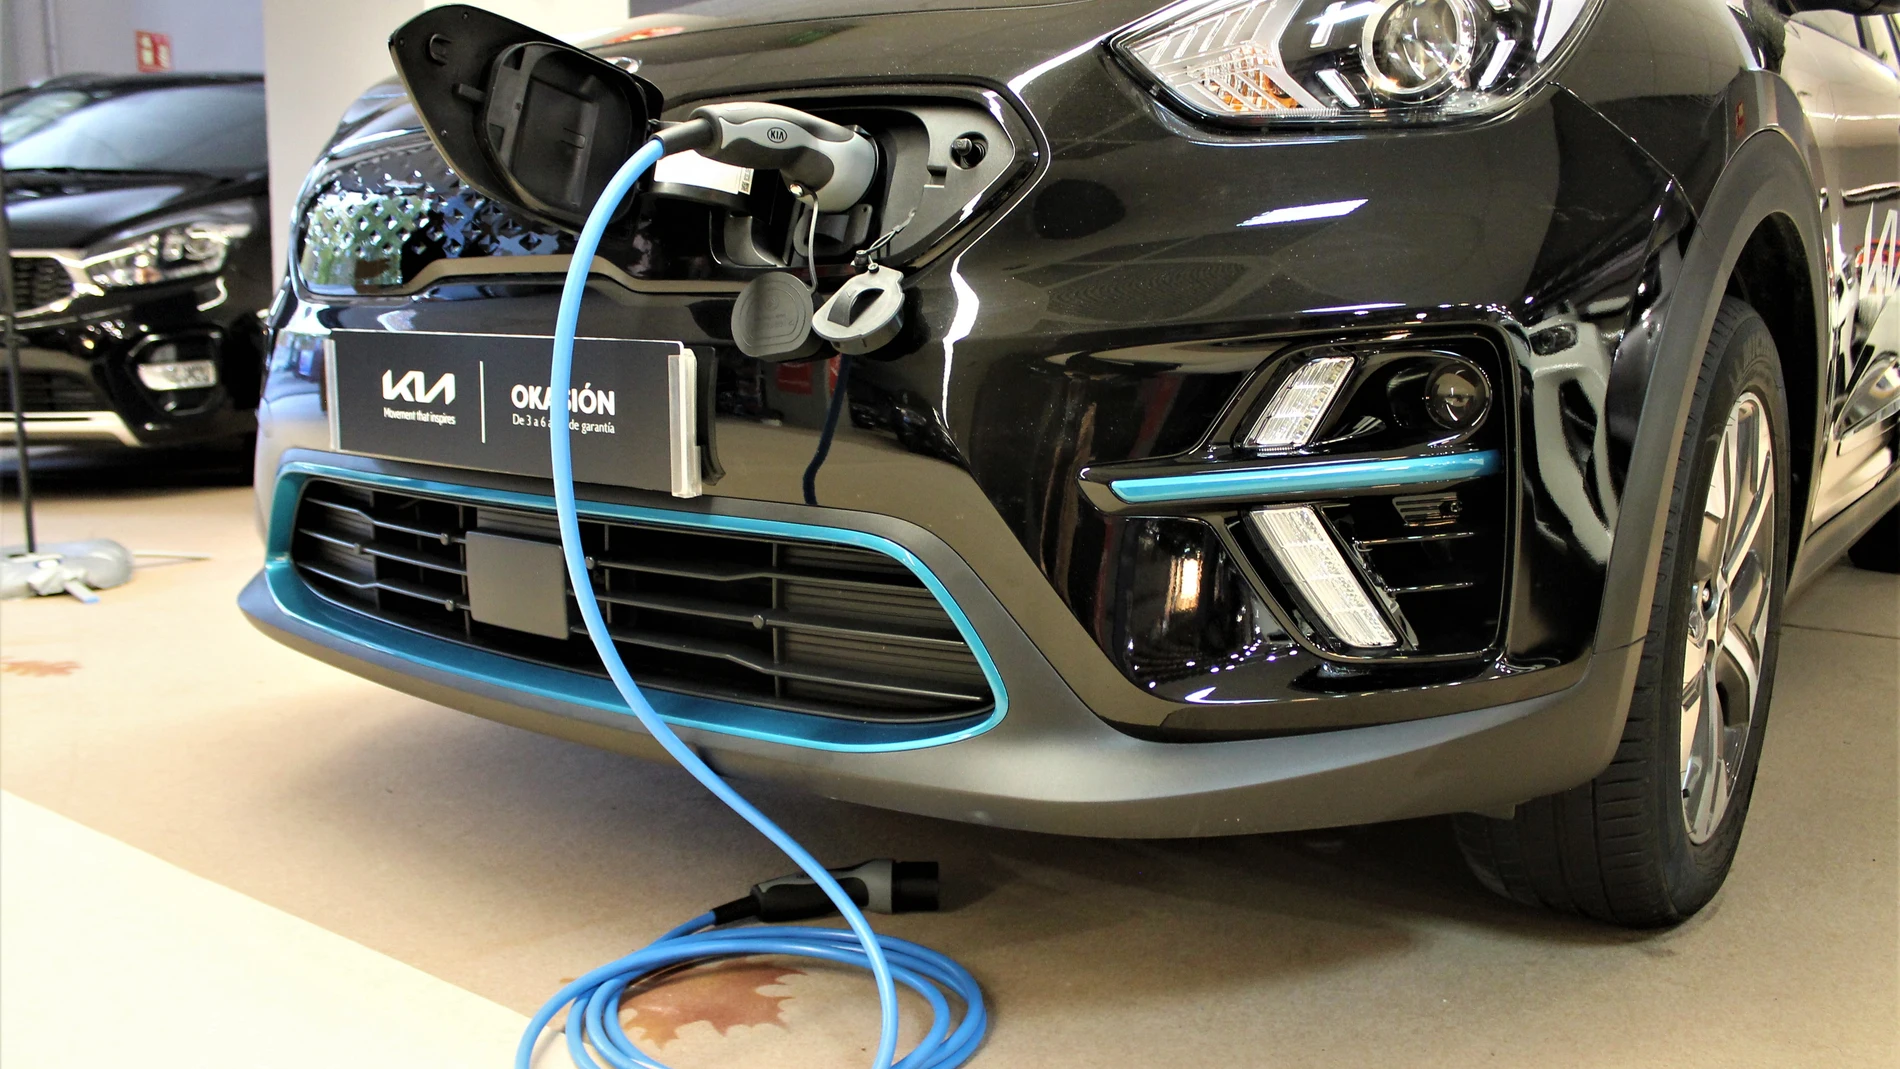 Economía/Motor.- El PP plantea destinar fondos europeos para agilizar la electrificación de vehículos de combustión